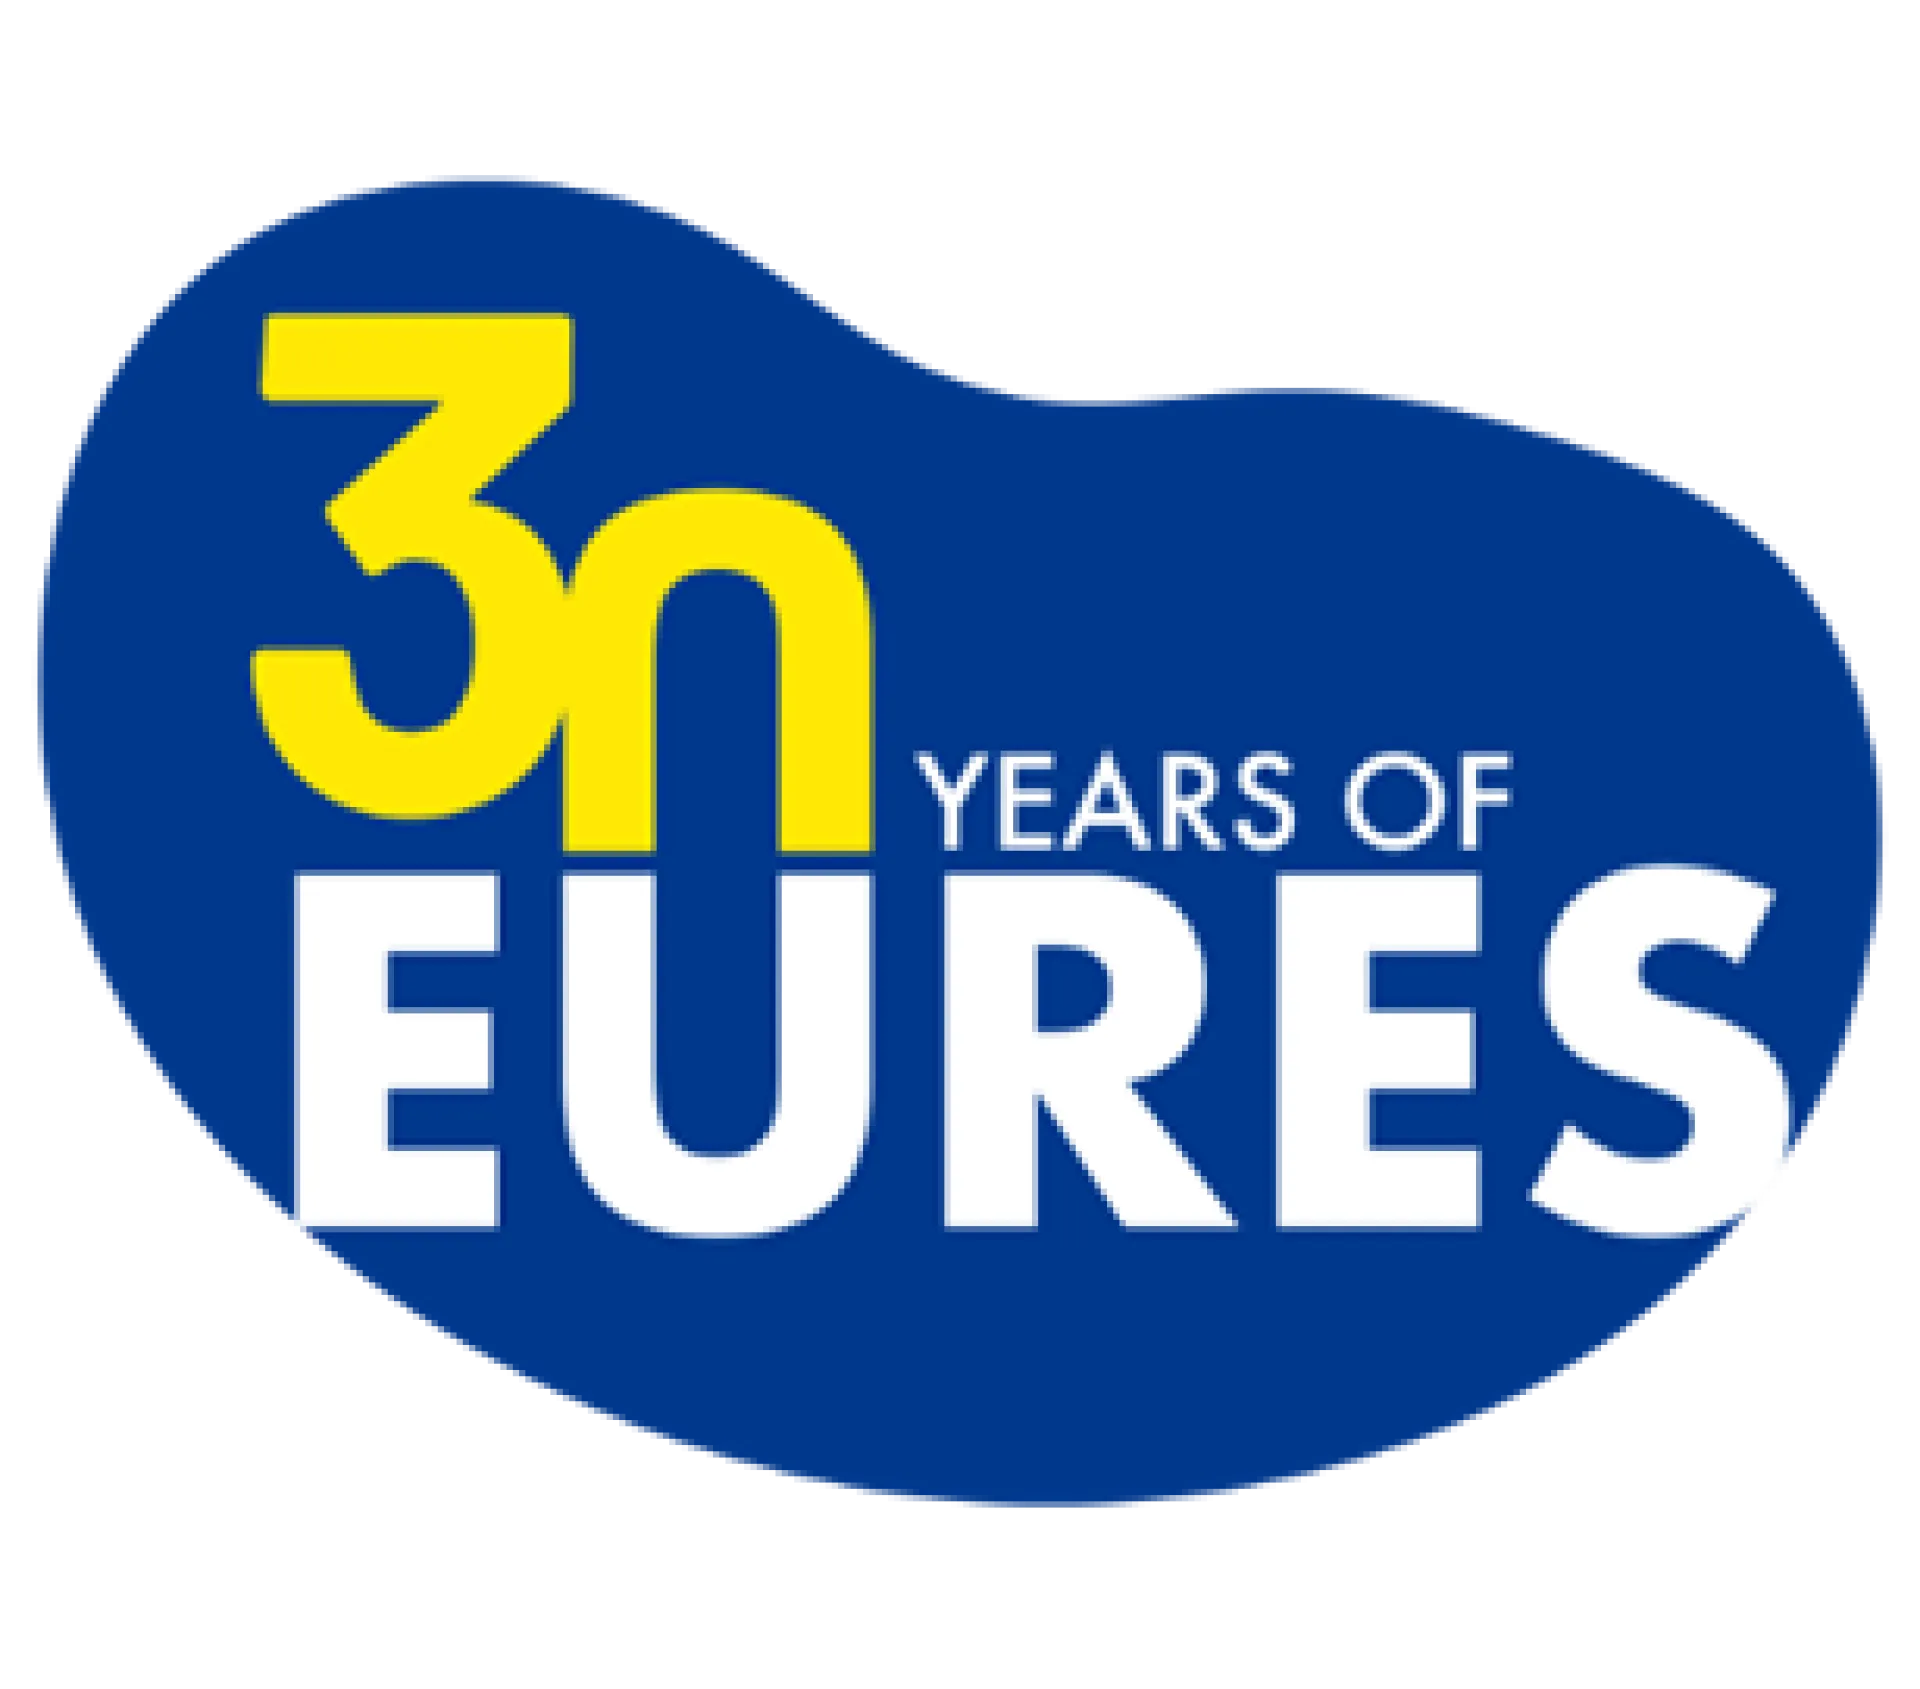 EURES 30 Years Logo